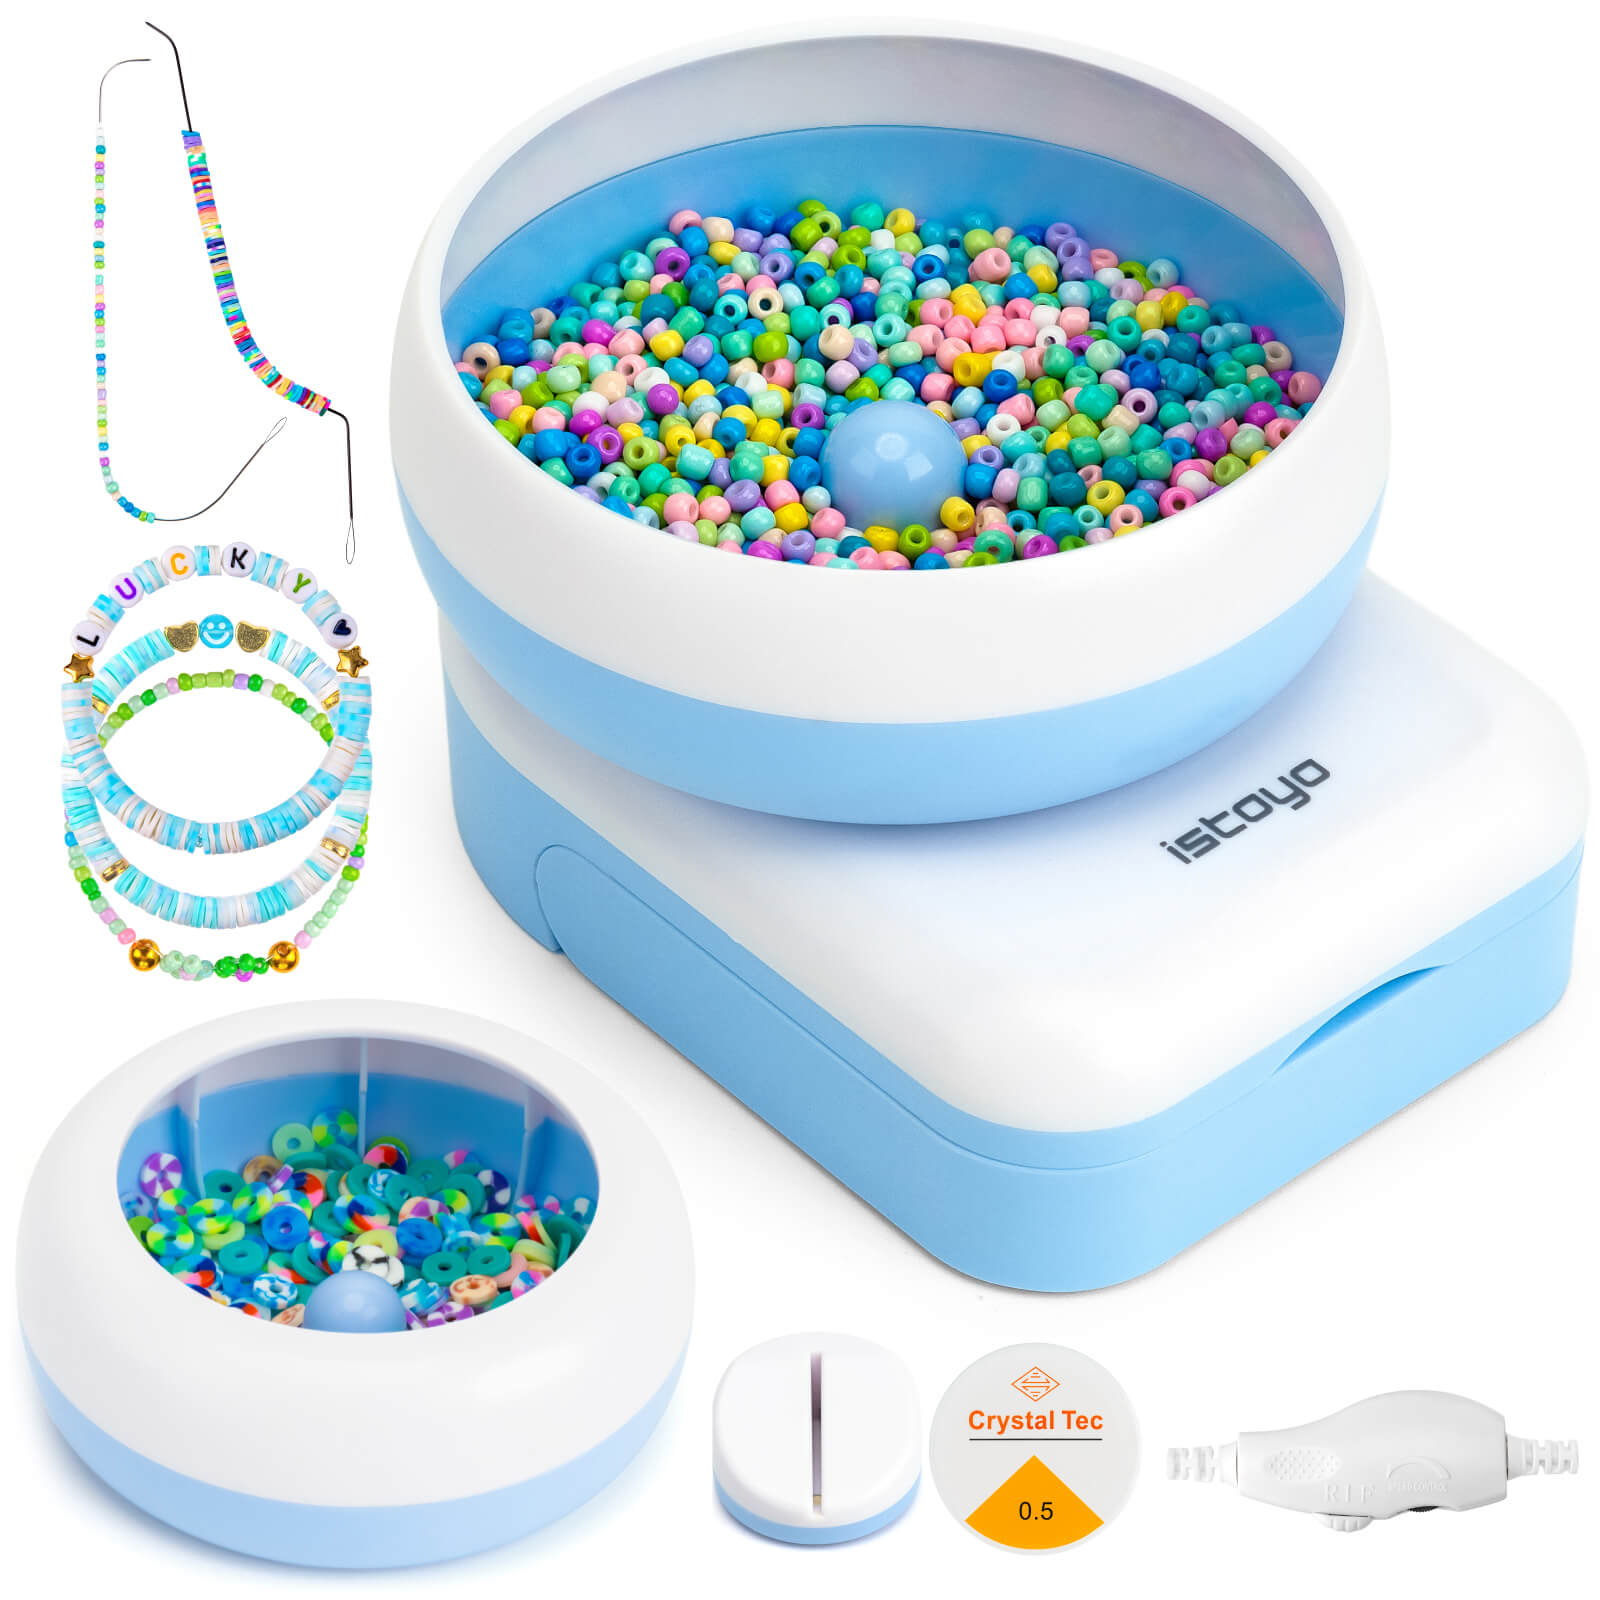 Bead-EZ Spinner for Threading Seed Beads